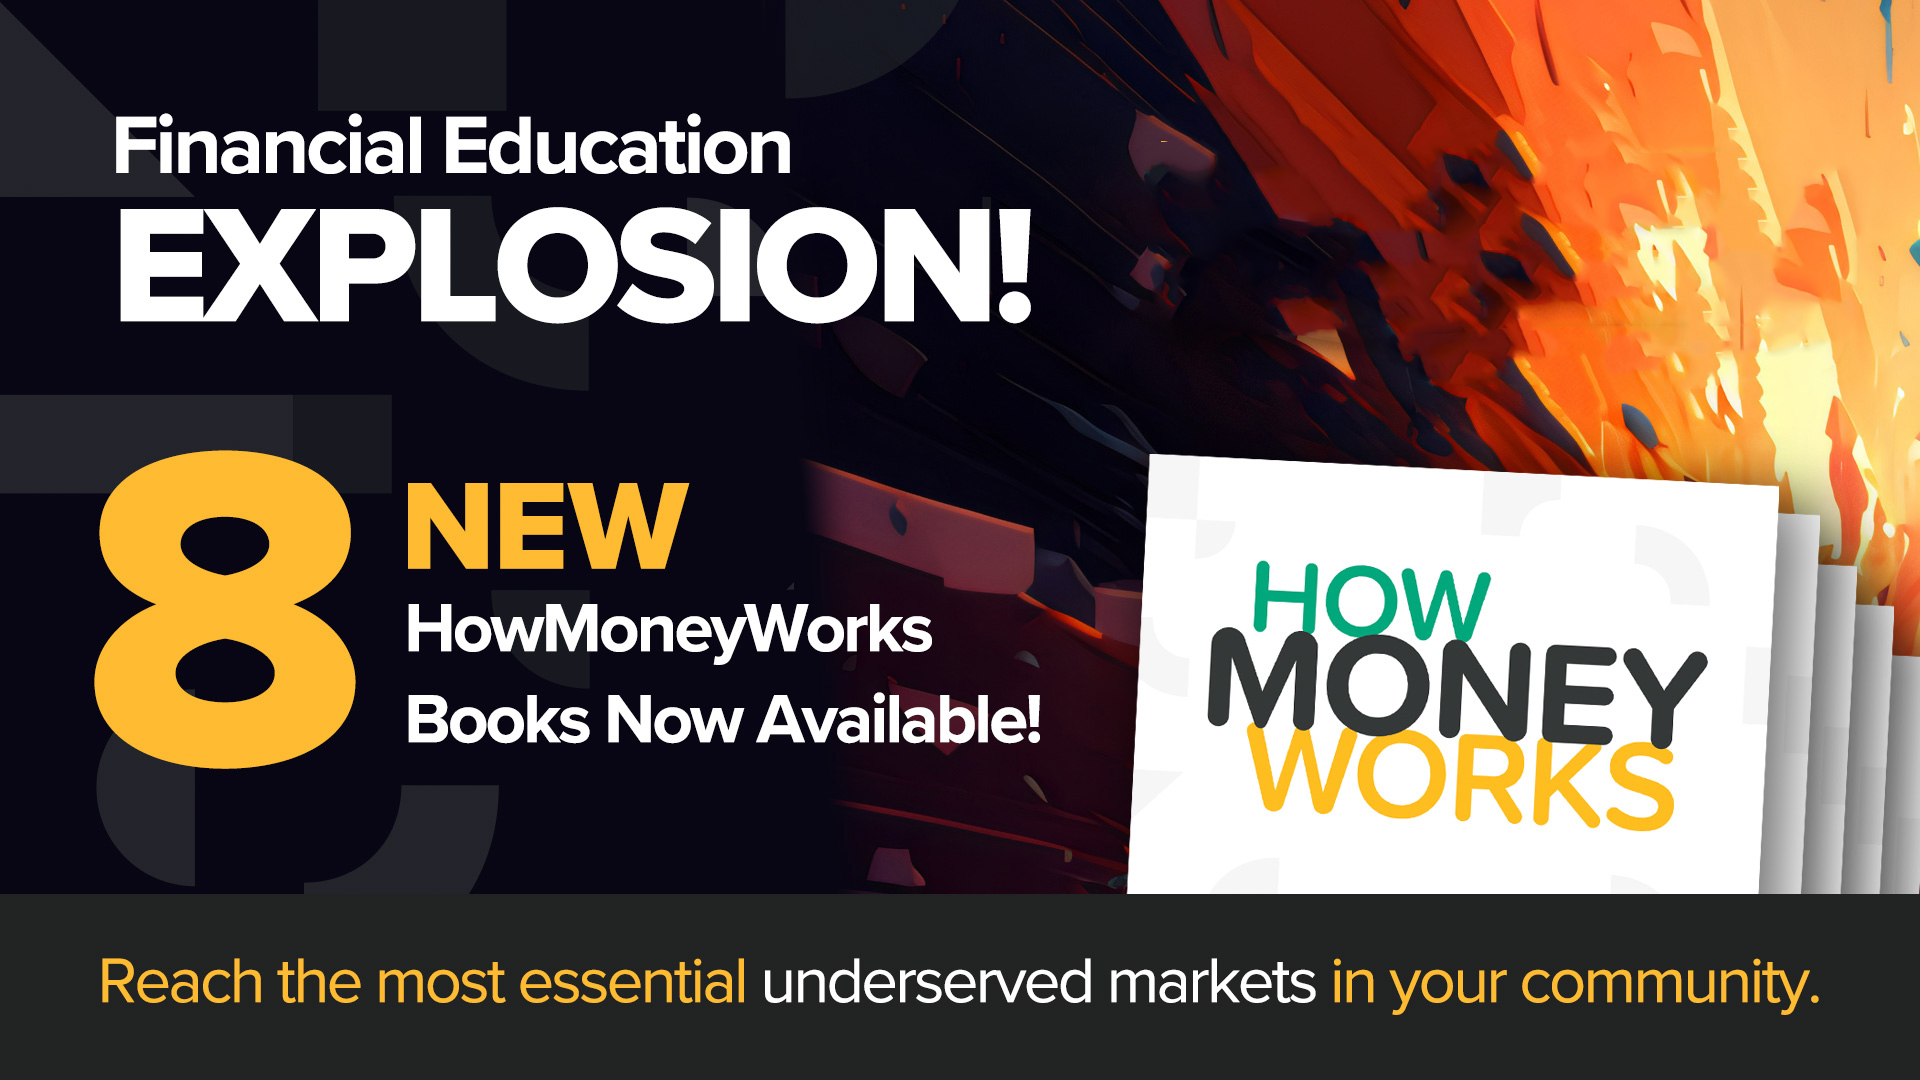 8 nouveaux livres HowMoneyWorks - Nous dévoilons aujourd'hui une nouvelle gamme diversifiée de livres sur l'éducation financière